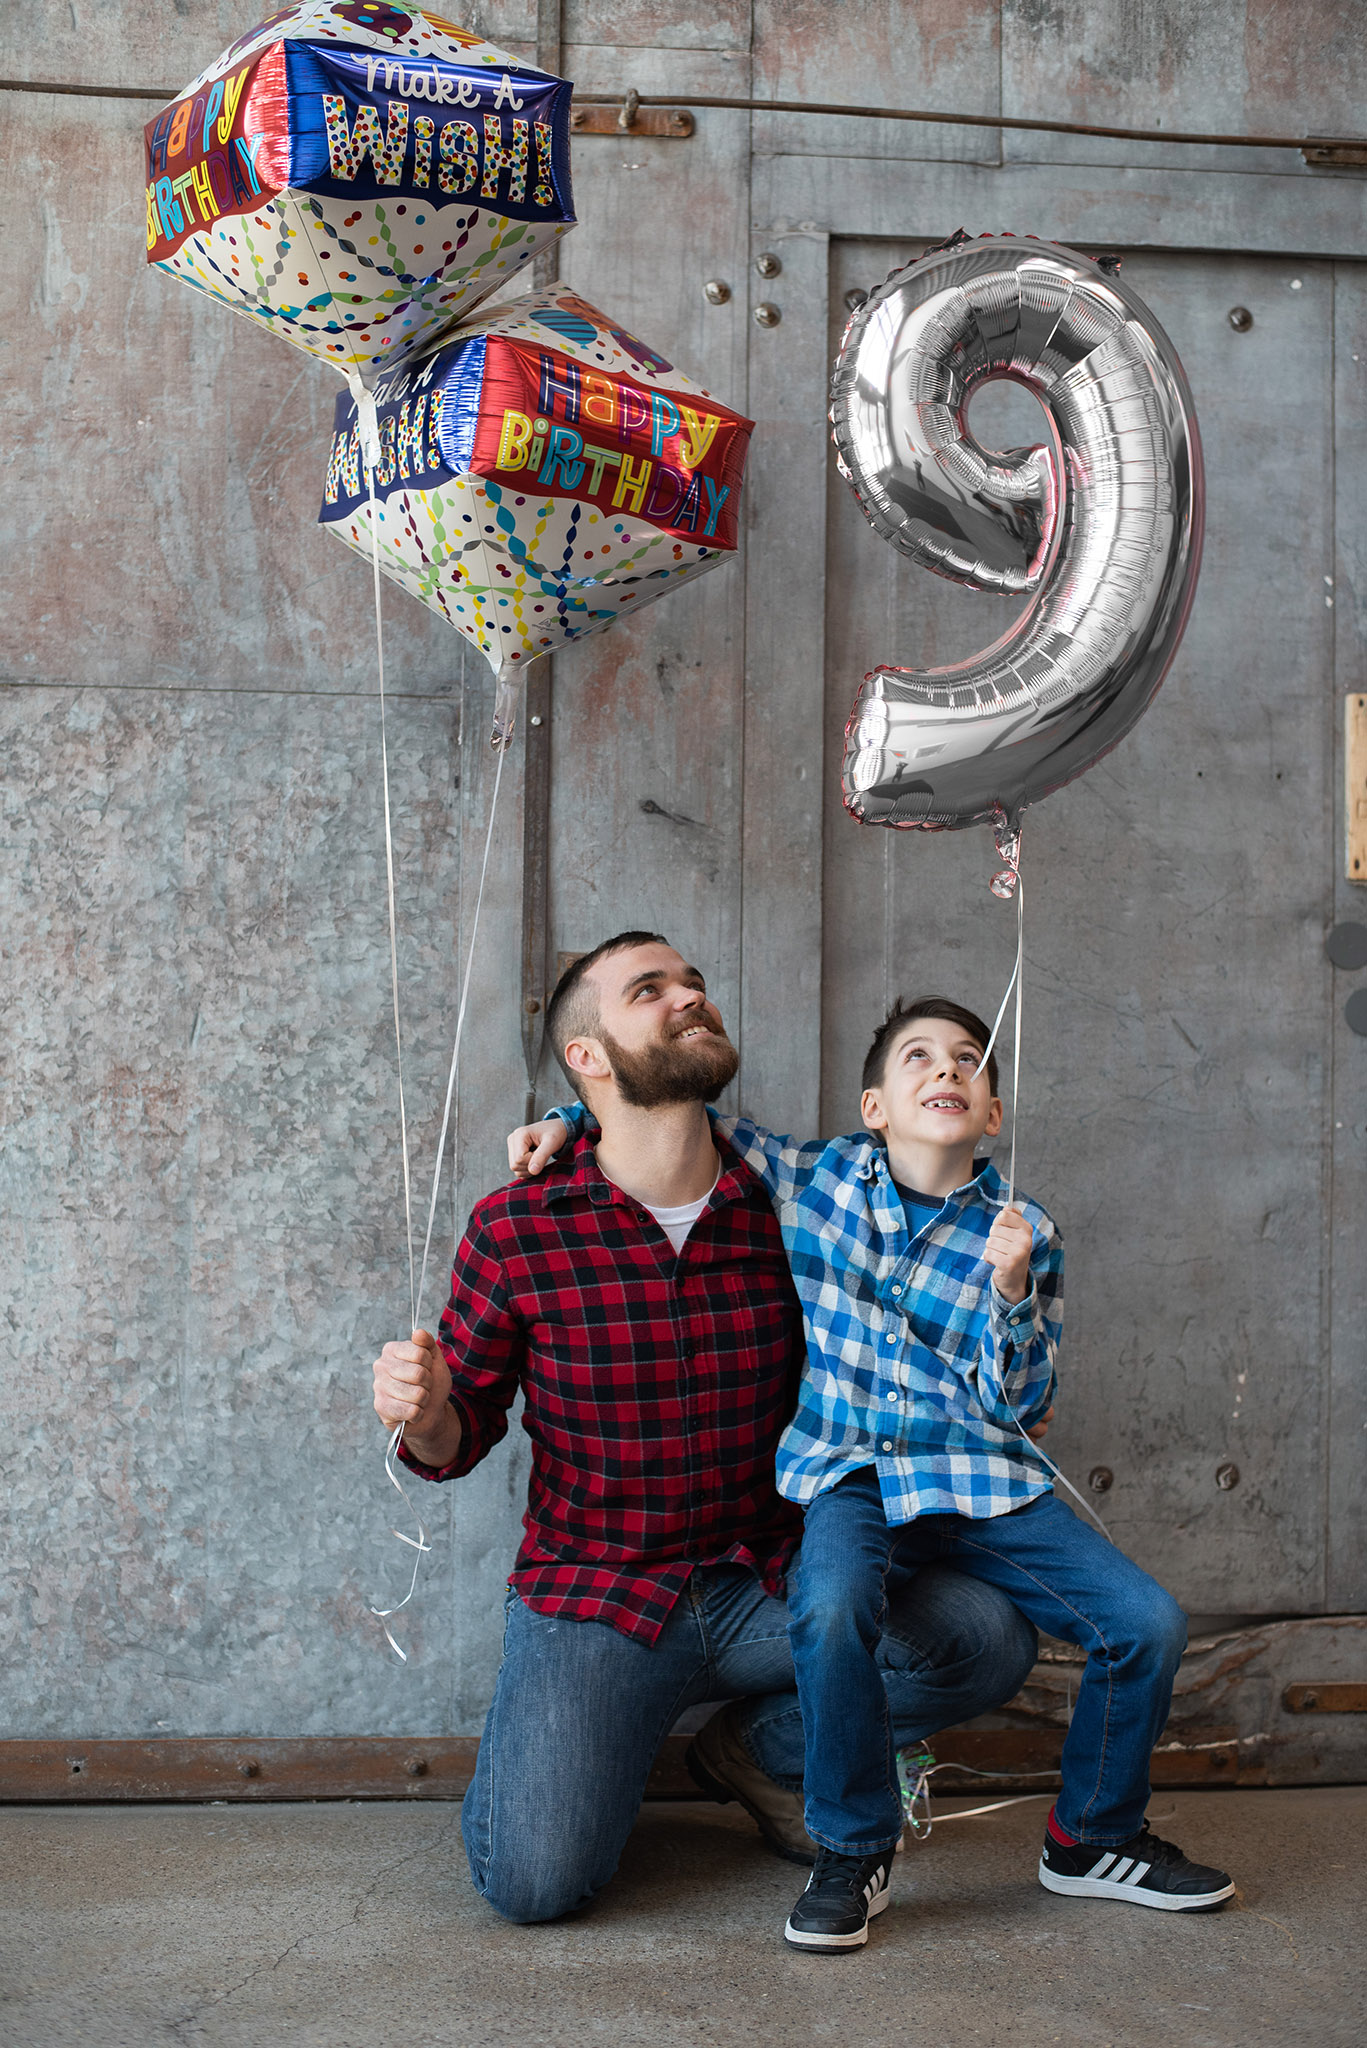 Balónek fóliový narozeniny číslo 9 stříbrný 86cm